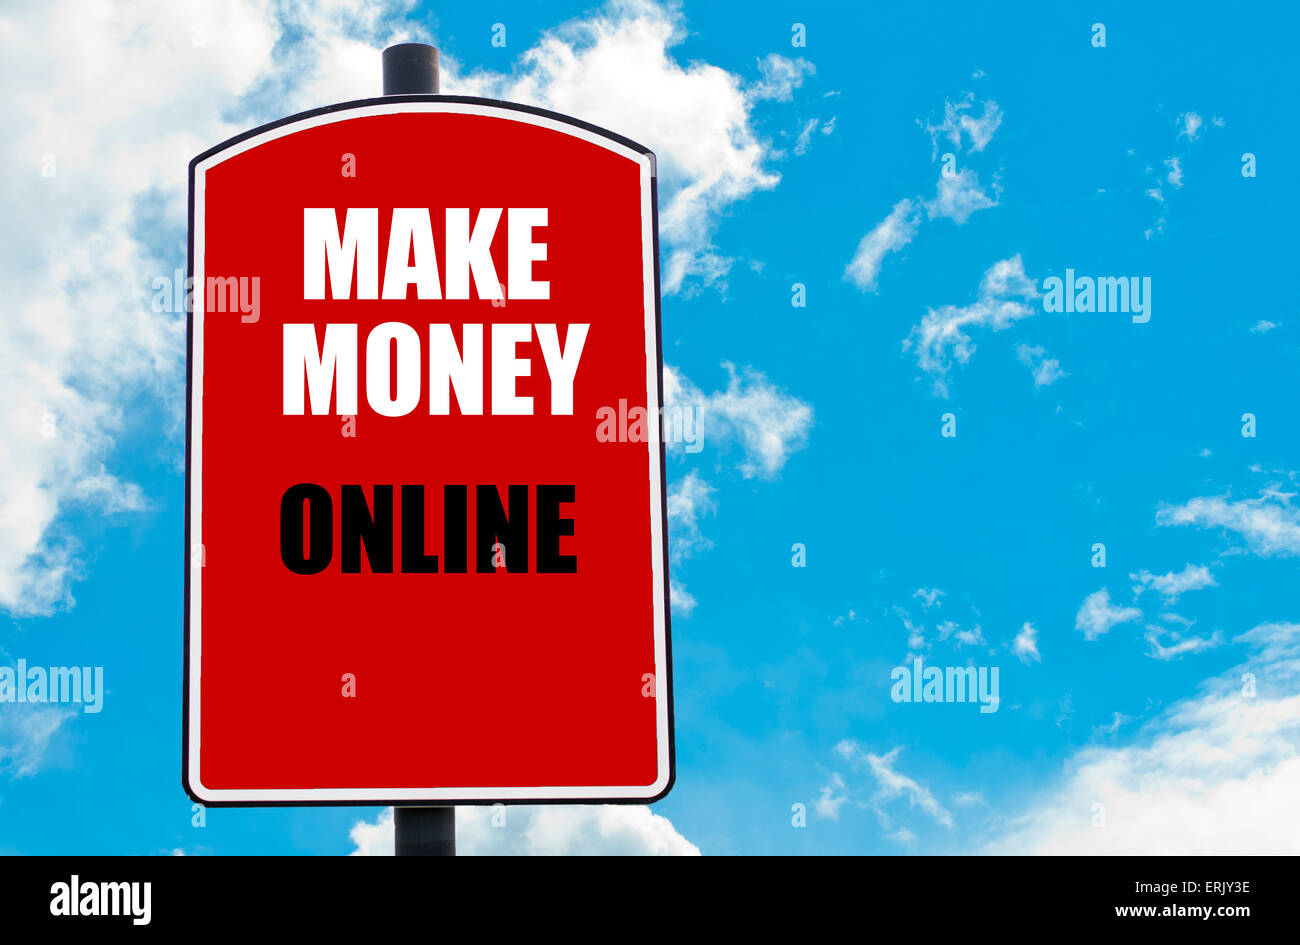 Hãy làm chủ cuộc sống của bạn với cách kiếm tiền trực tuyến! Những ý tưởng tuyệt vời để kiếm tiền từ nhà chỉ cách đó một trang web hay ứng dụng đơn giản. Khám phá ngay hình ảnh liên quan để biết thêm chi tiết và thực hiện ước mơ của bạn!